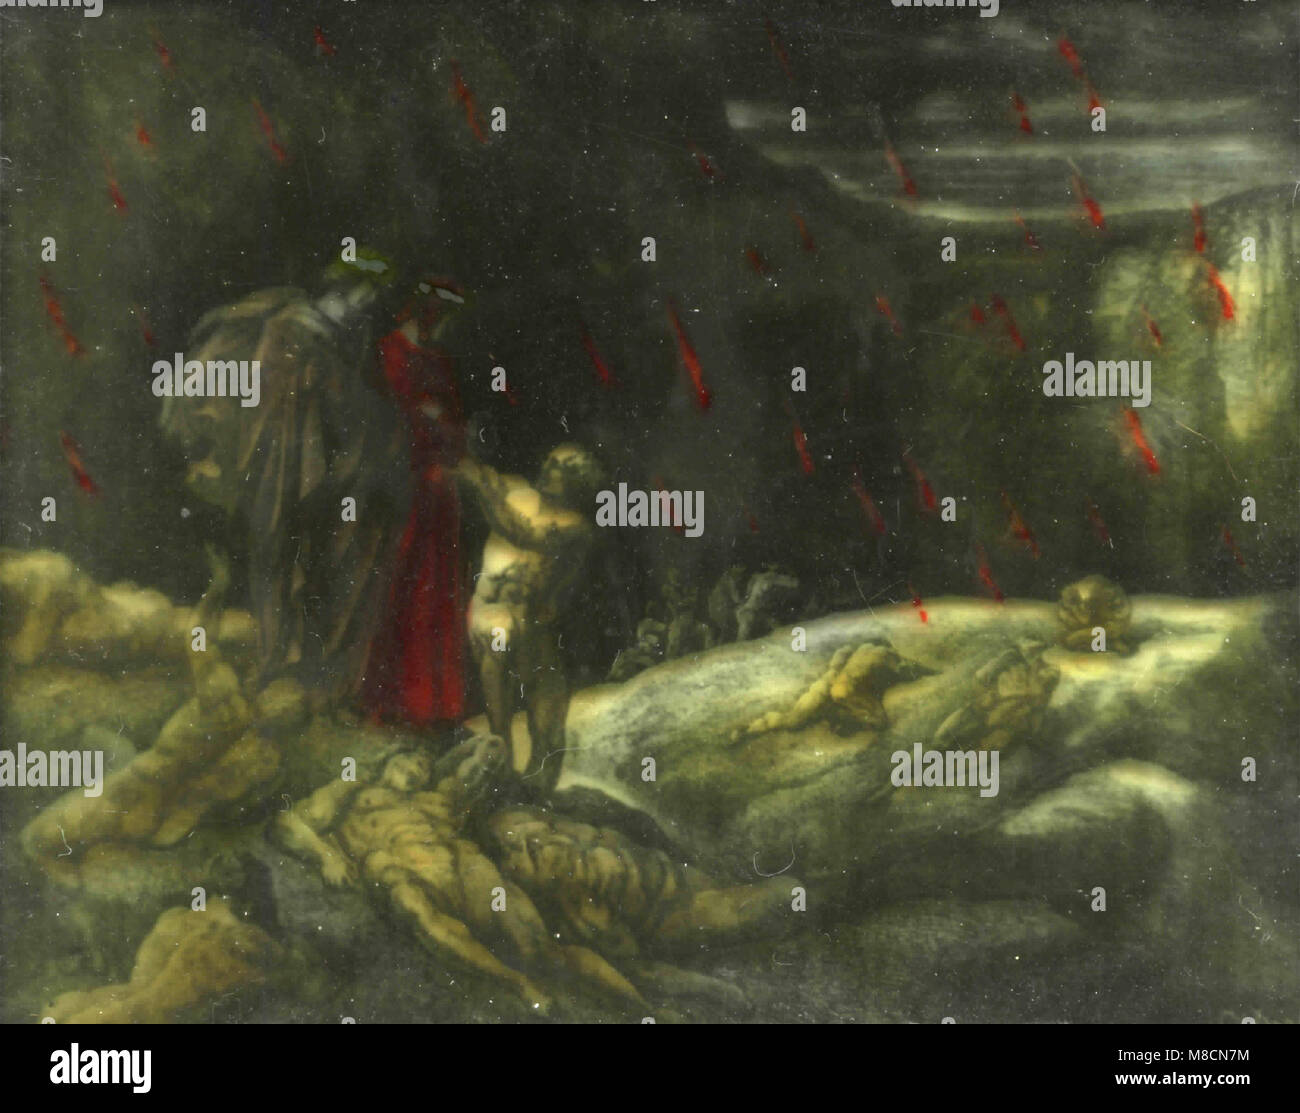 Canto XVI (16), Dante meets Brunetto Latini and the sodomites, Dante's Inferno illustration by Dorè Stock Photo